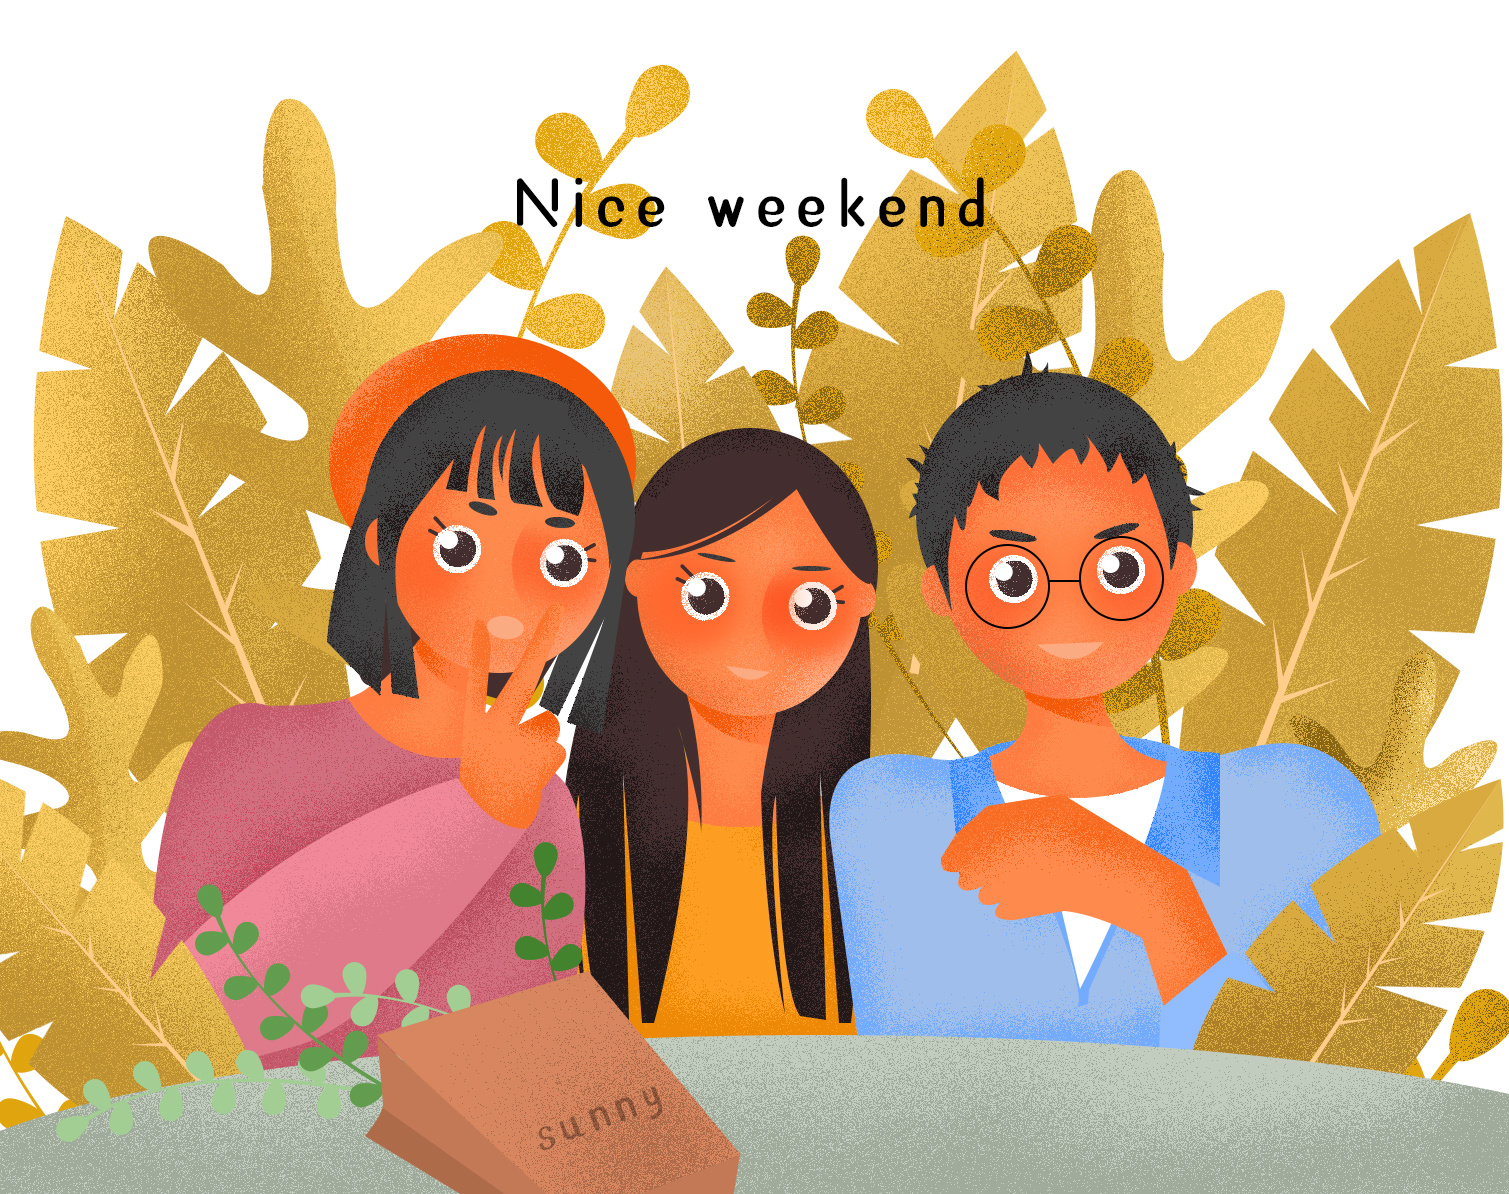 假期周末趣味活动彩色插画矢量素材v21 Weekend Fun Vector Illustration #21 – 设计小咖